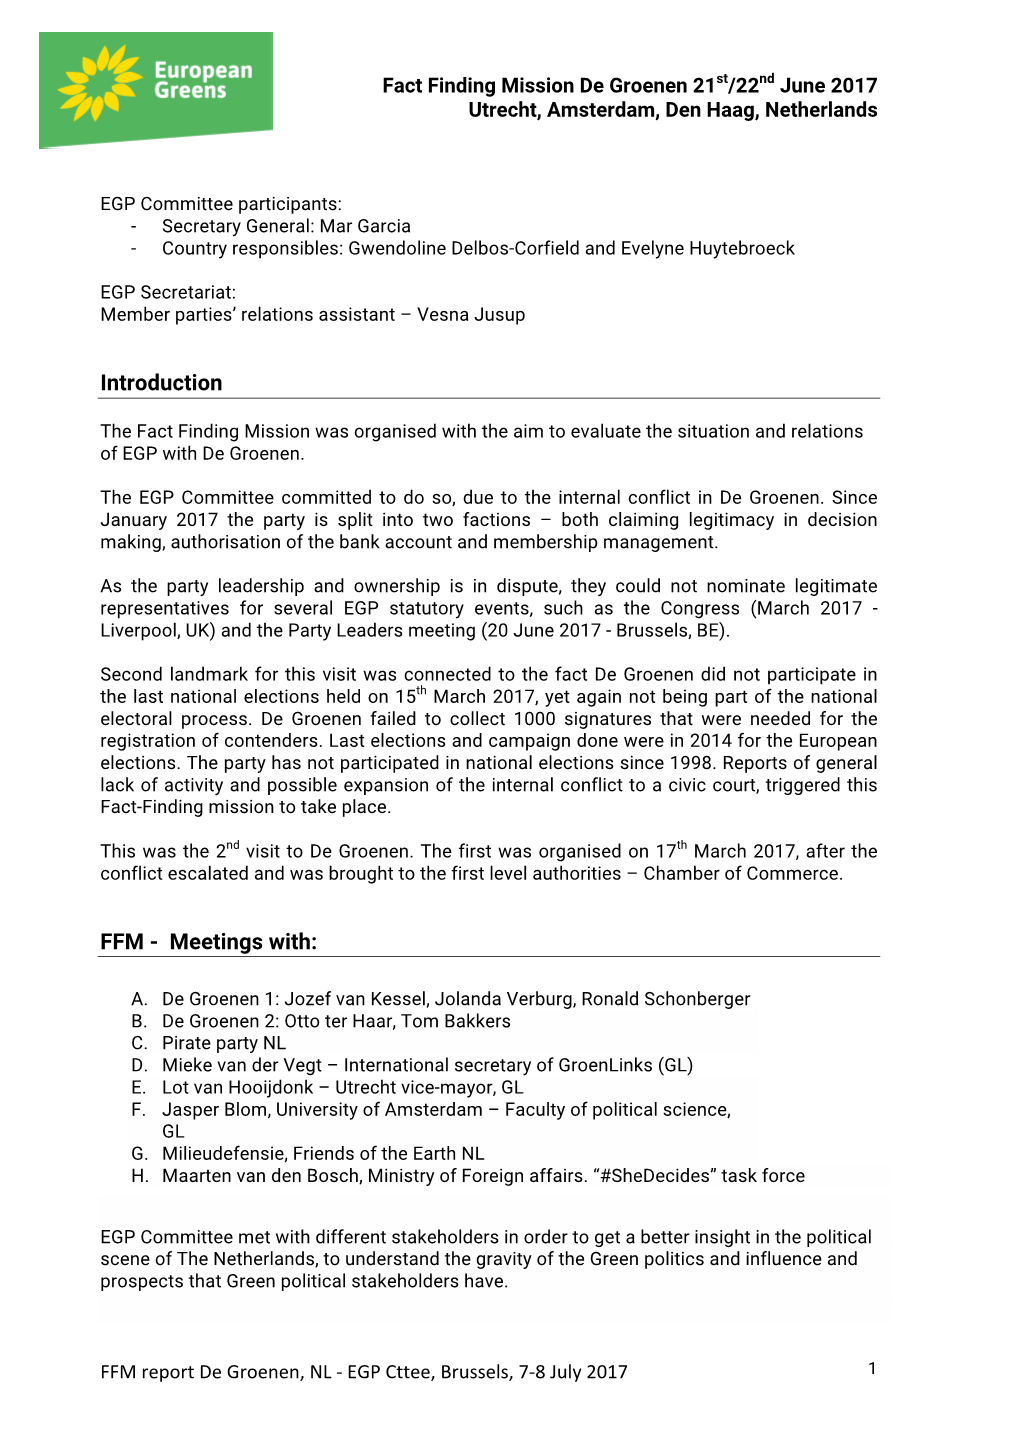 Annex 2 Report FFM De Groenen 21-22 June